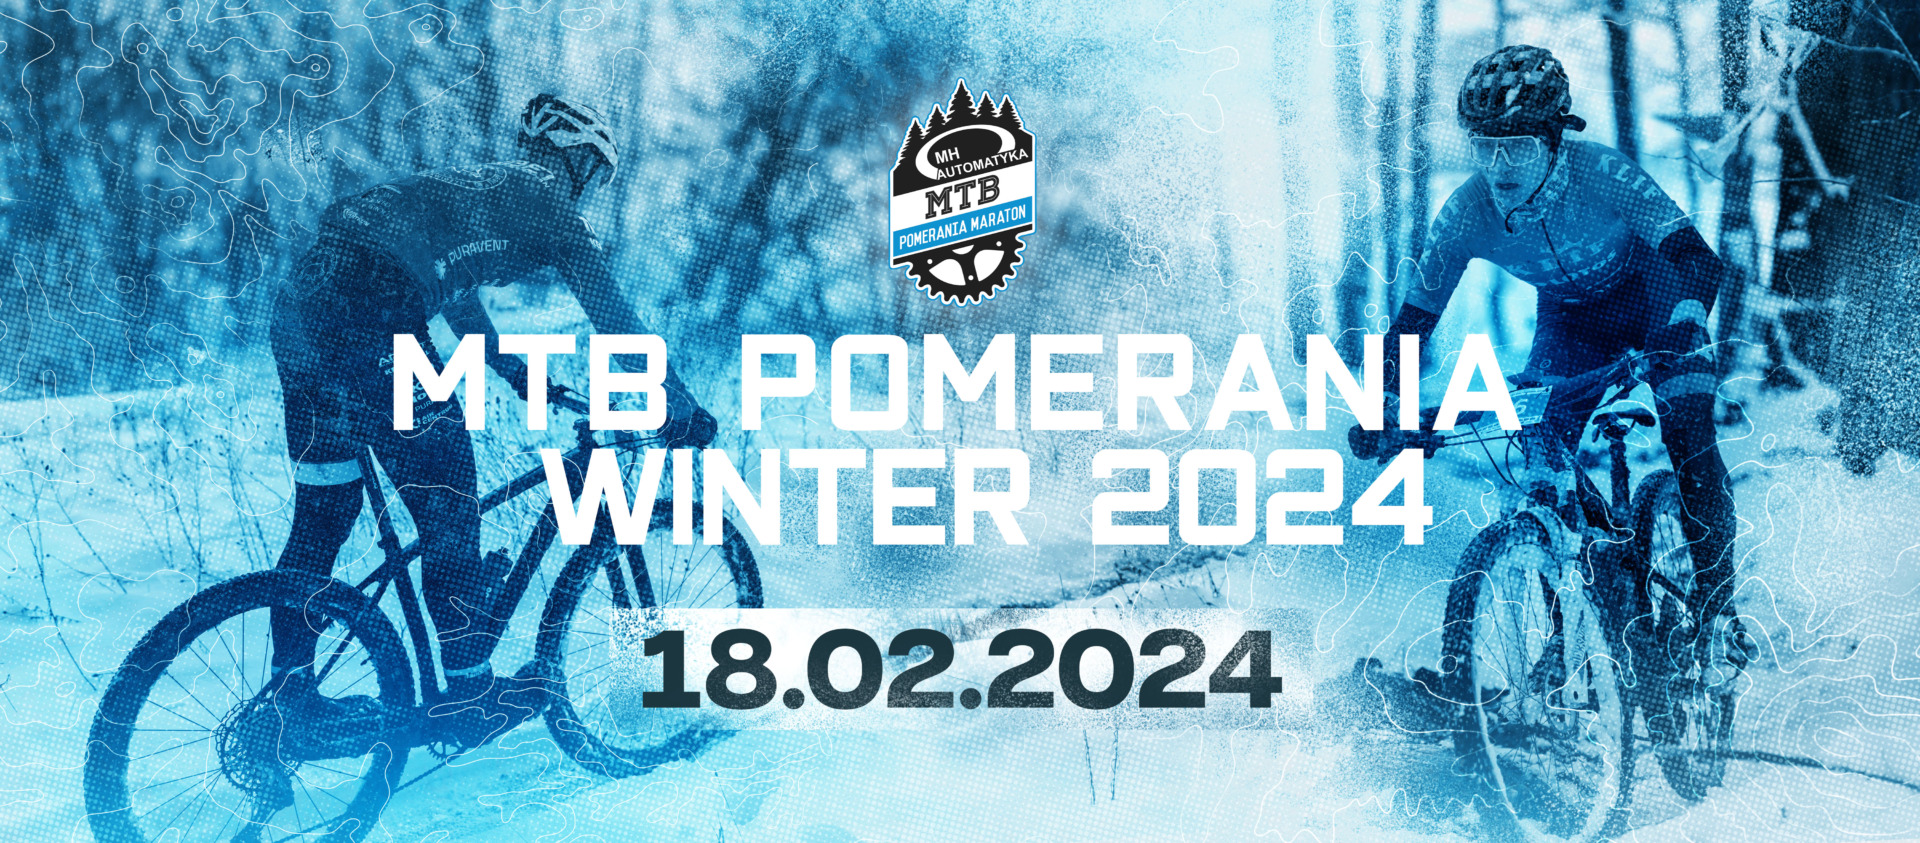 Zimowe wyzwanie Pomerania Winter MTB już w niedzielę 18 lutego! | ZAPOWIEDŹ